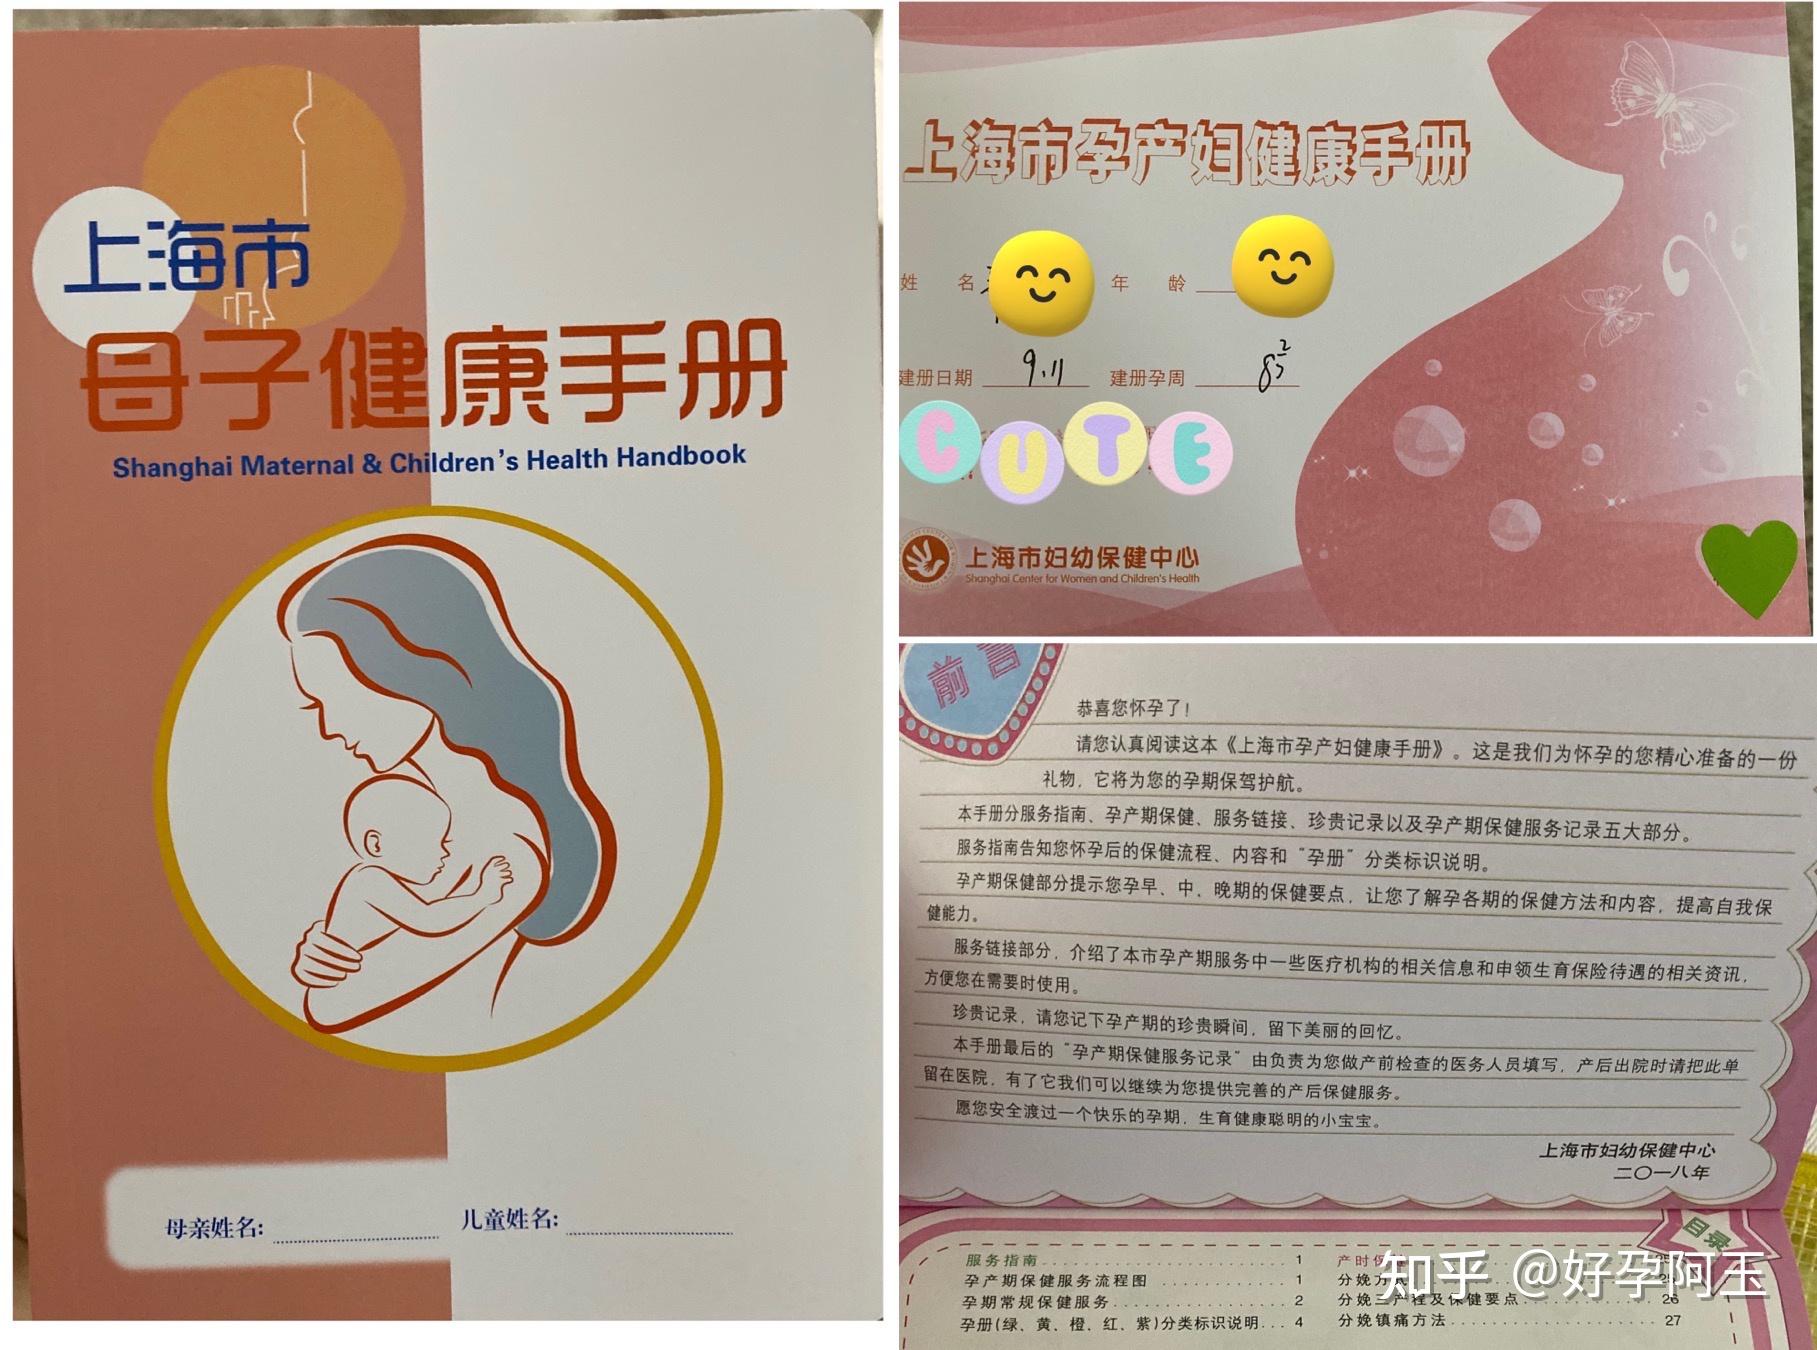 上海市孕产妇健康手册,俗称"小卡"拿到小卡后,医生说在我生产之前可以